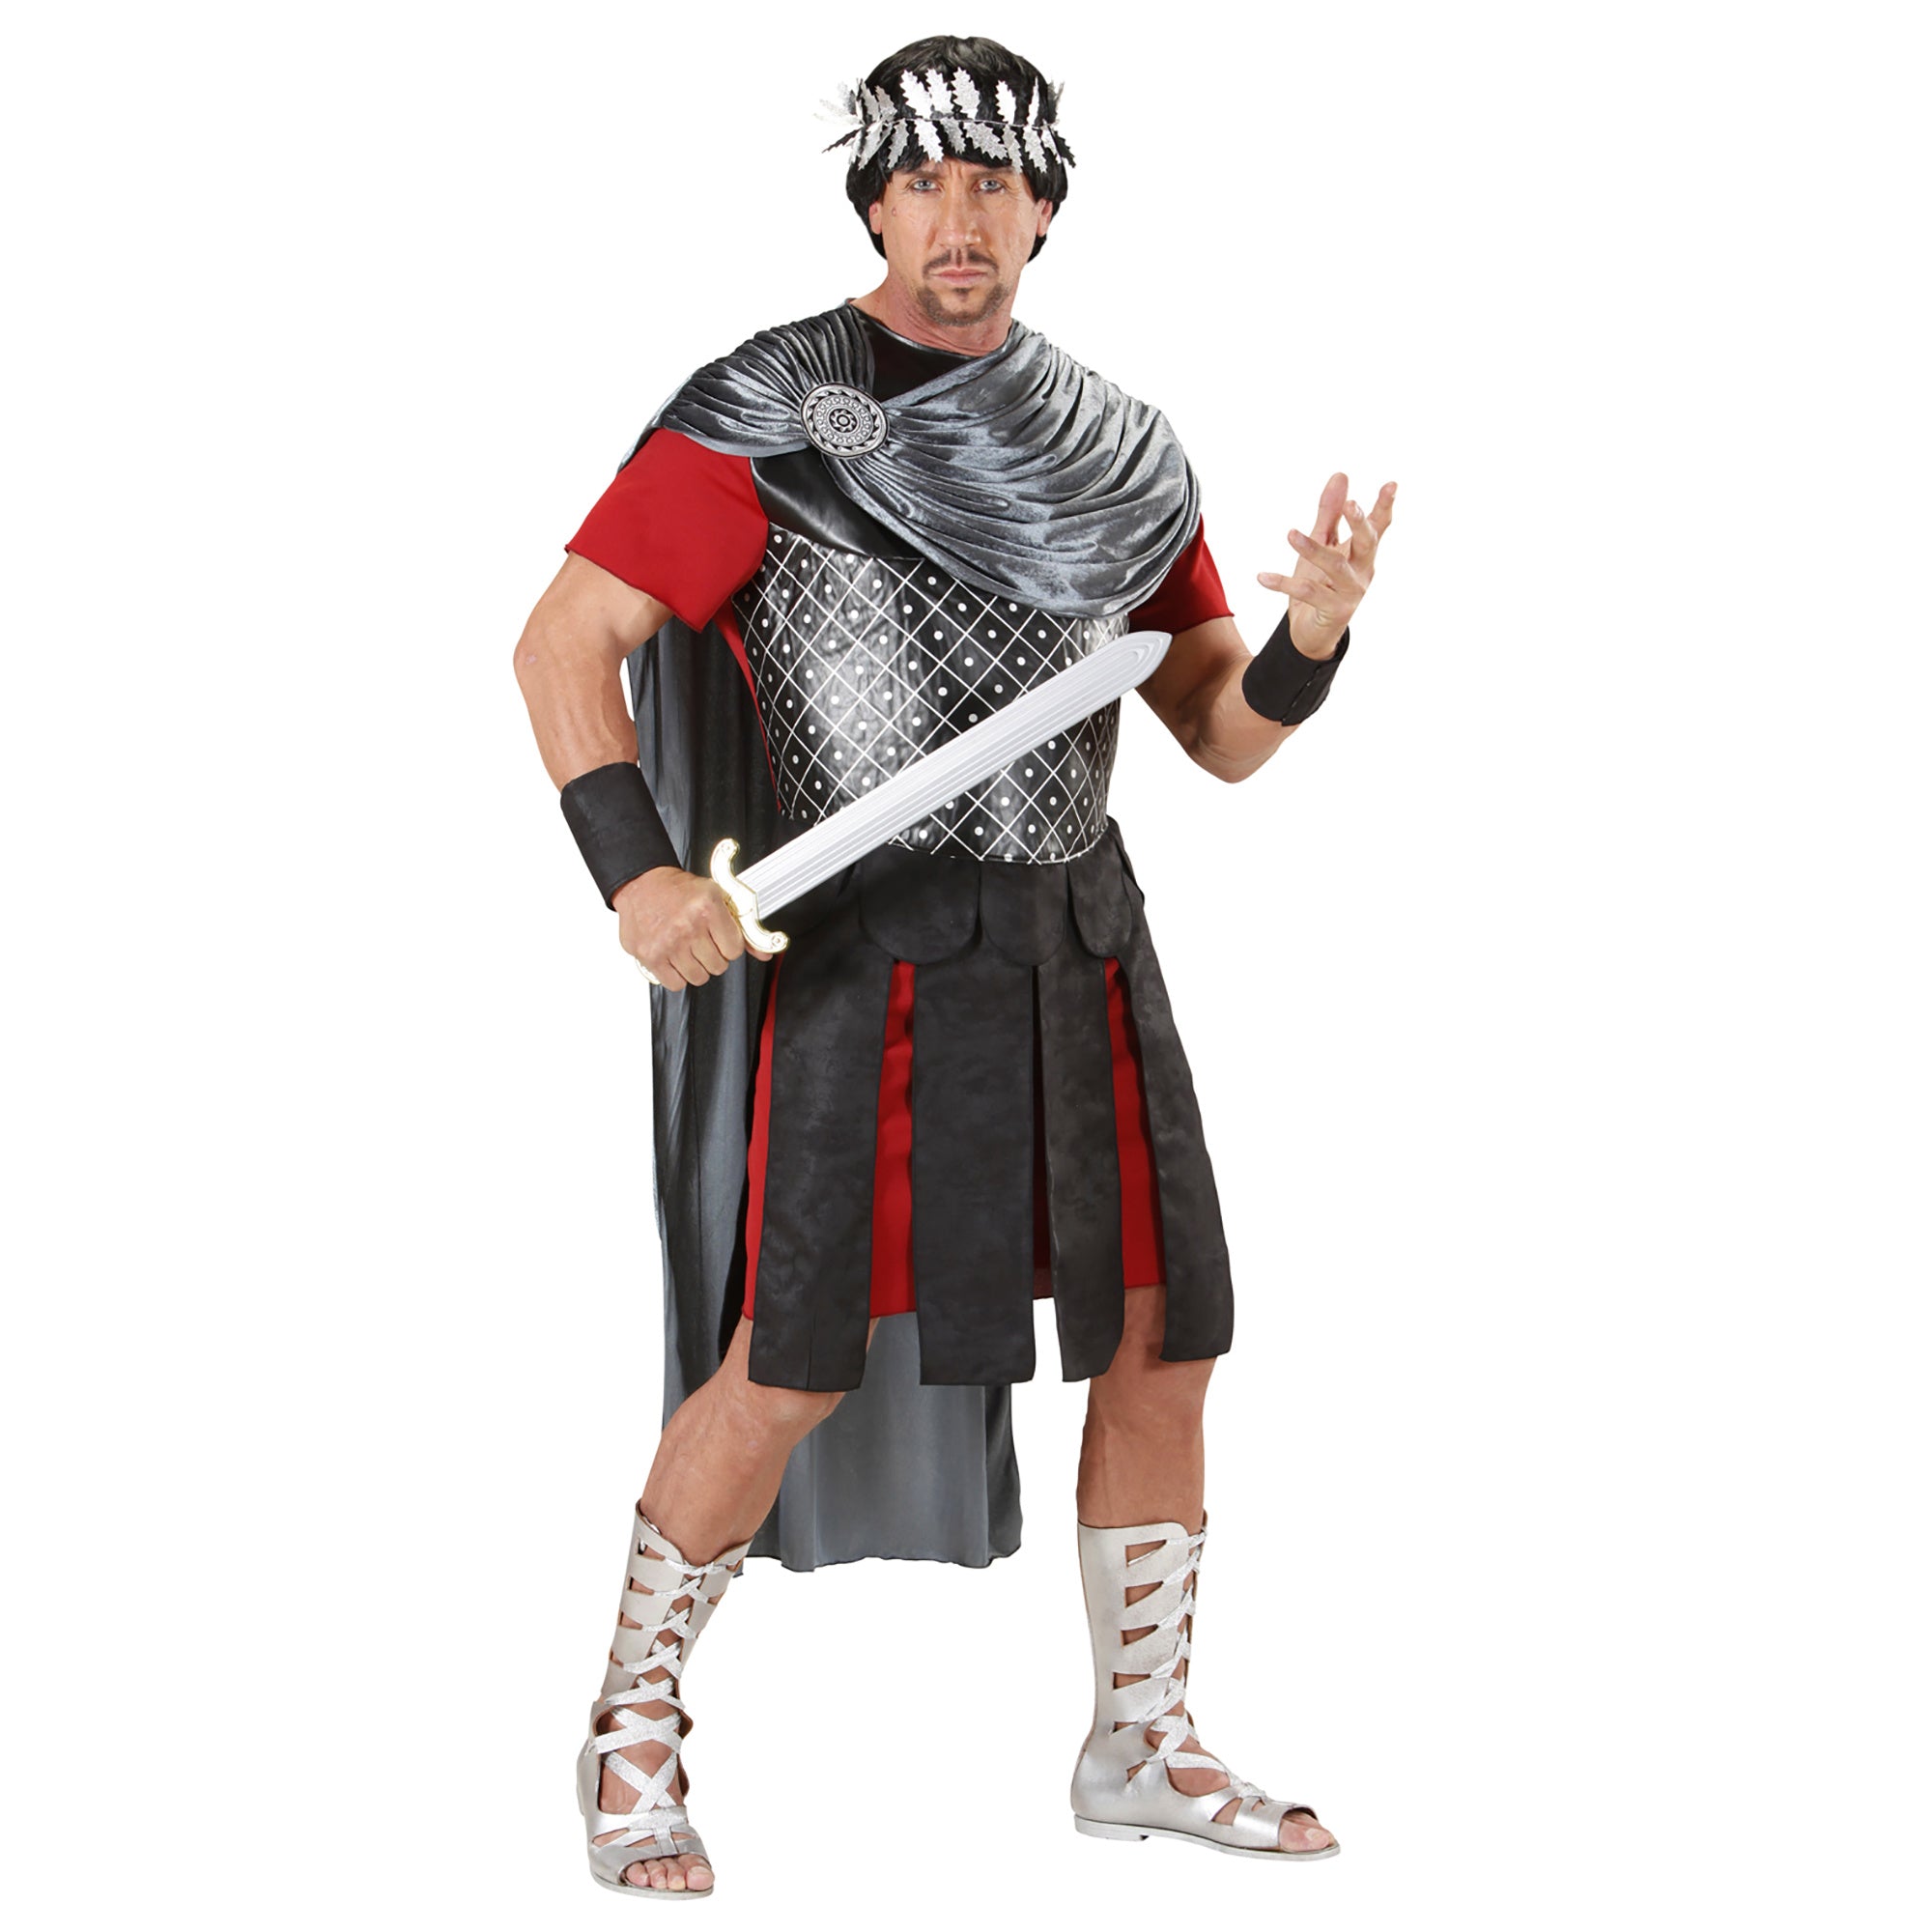 "Romeinse keizer kostuum voor heren - Verkleedkleding - Medium"